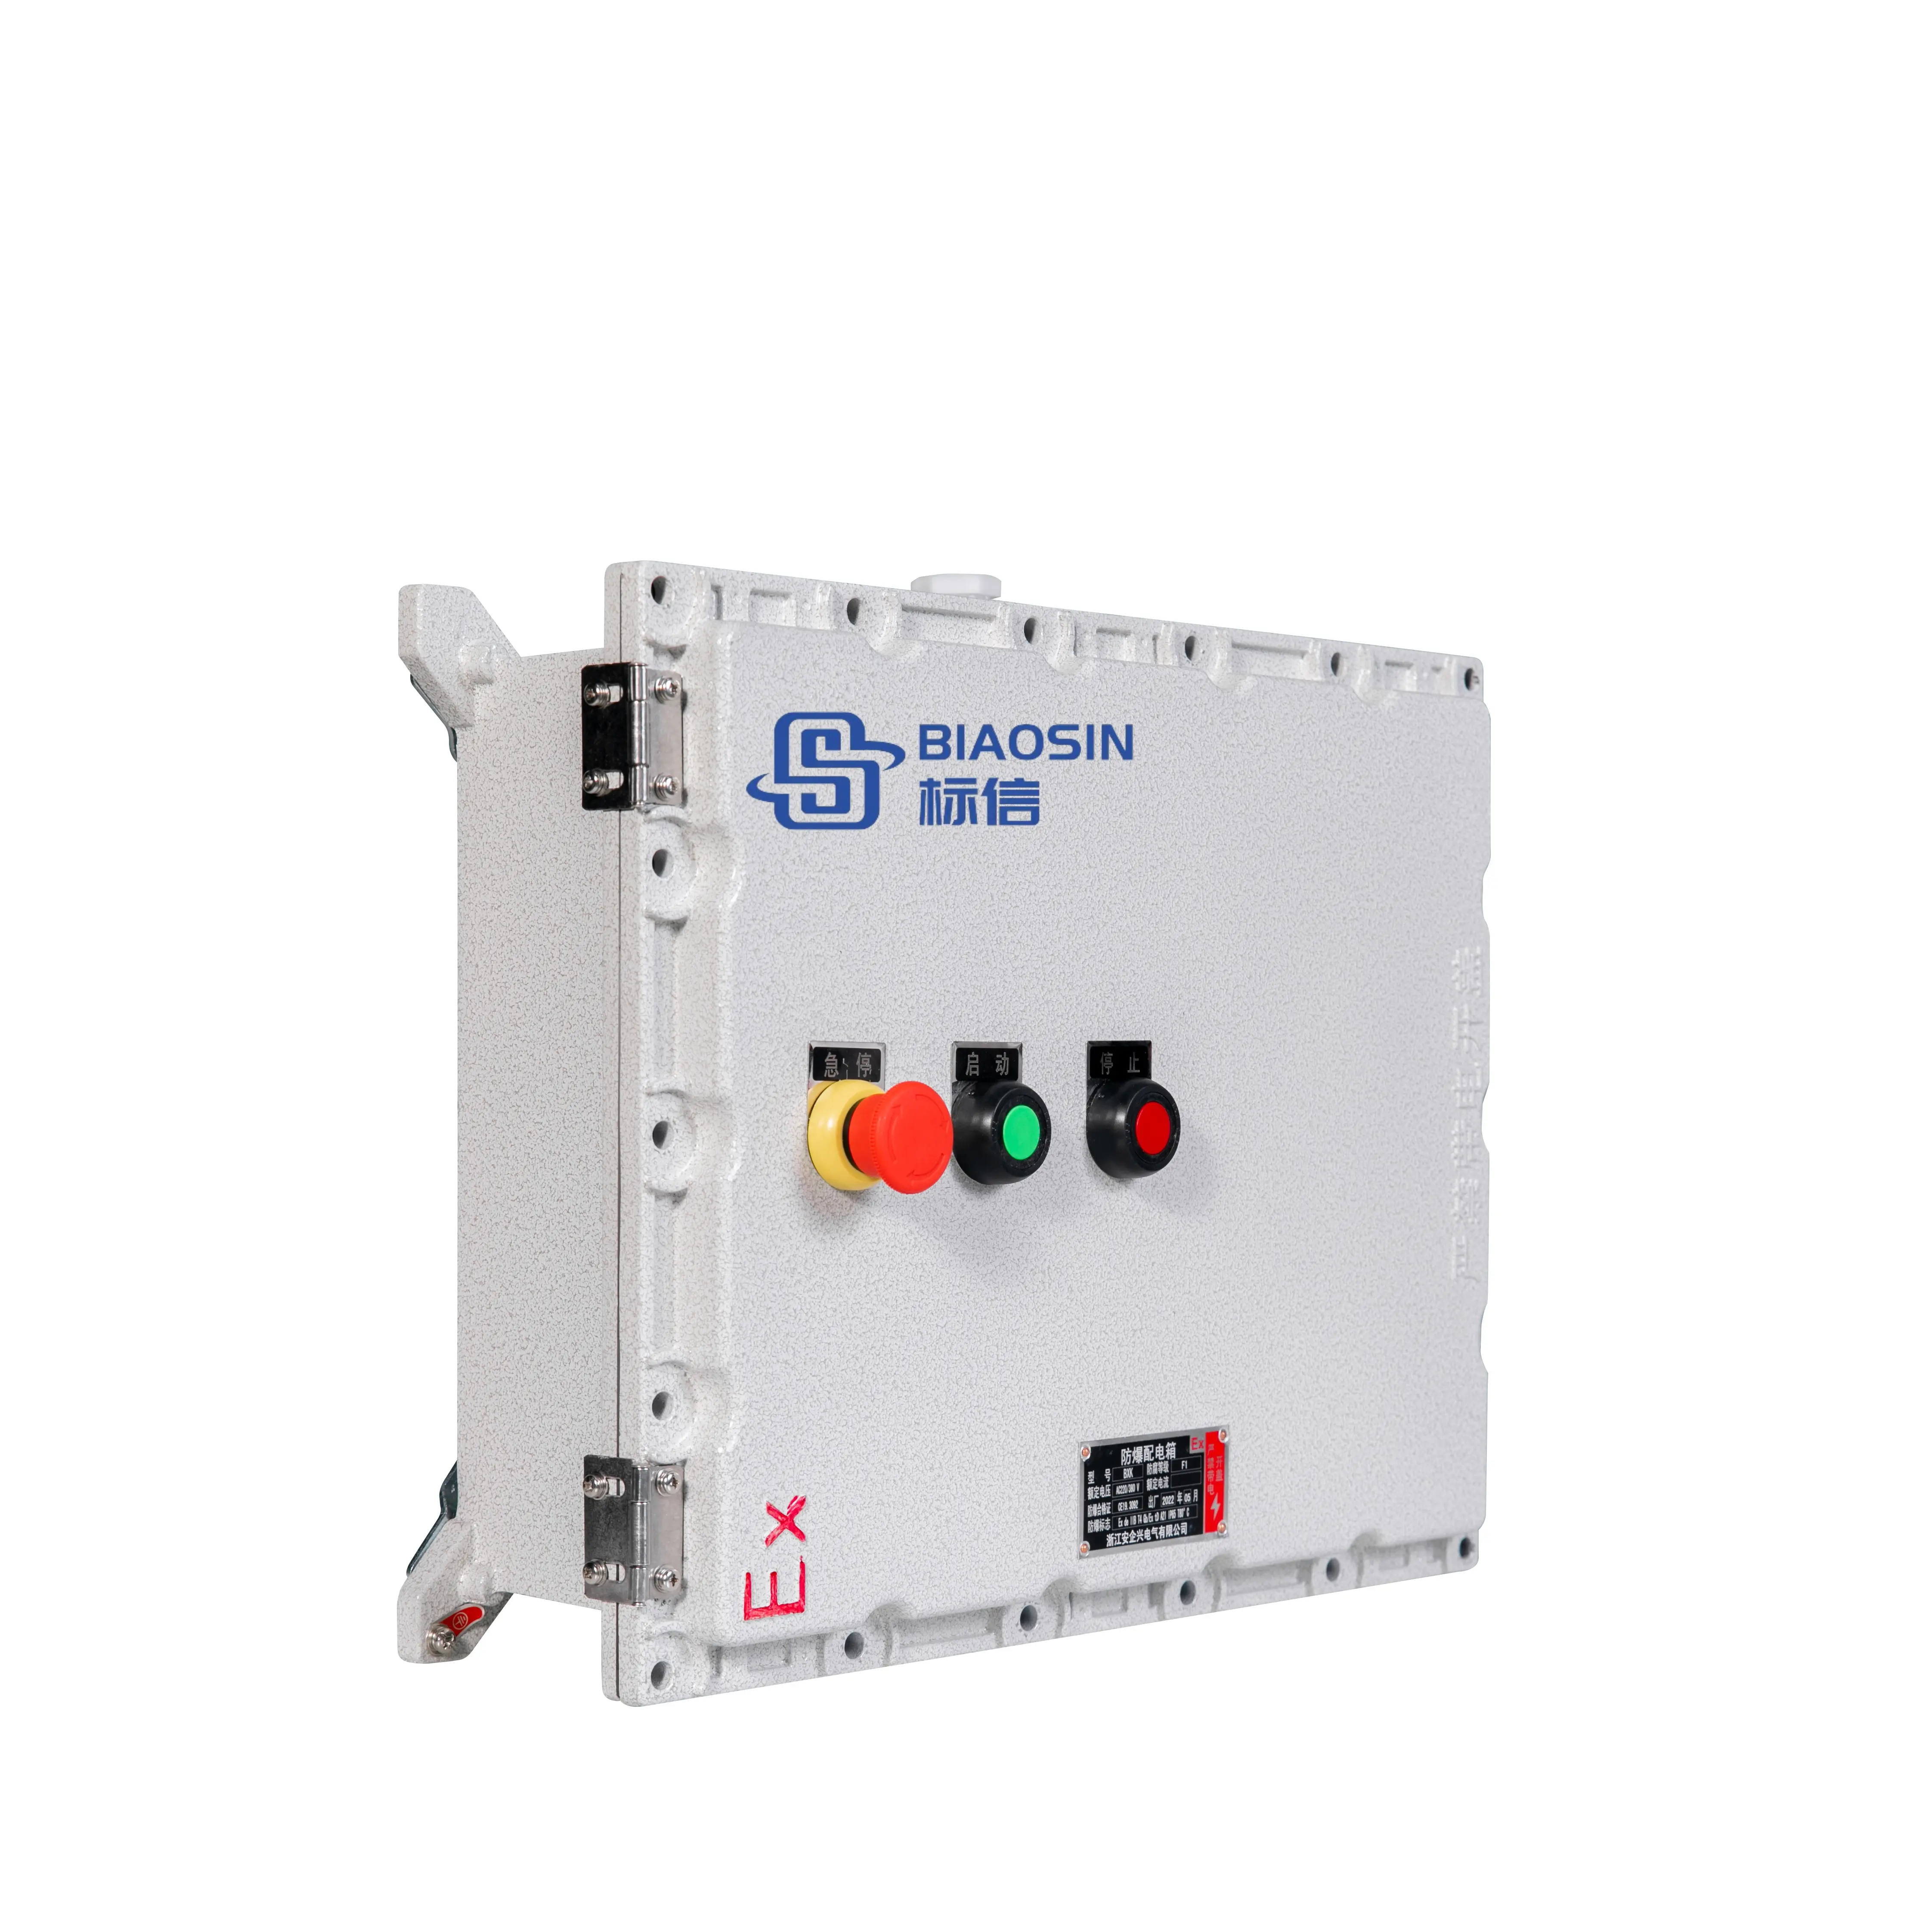 Precio barato personalizado gabinete de control completo caja eléctrica gabinete de distribución de energía caja de alimentación